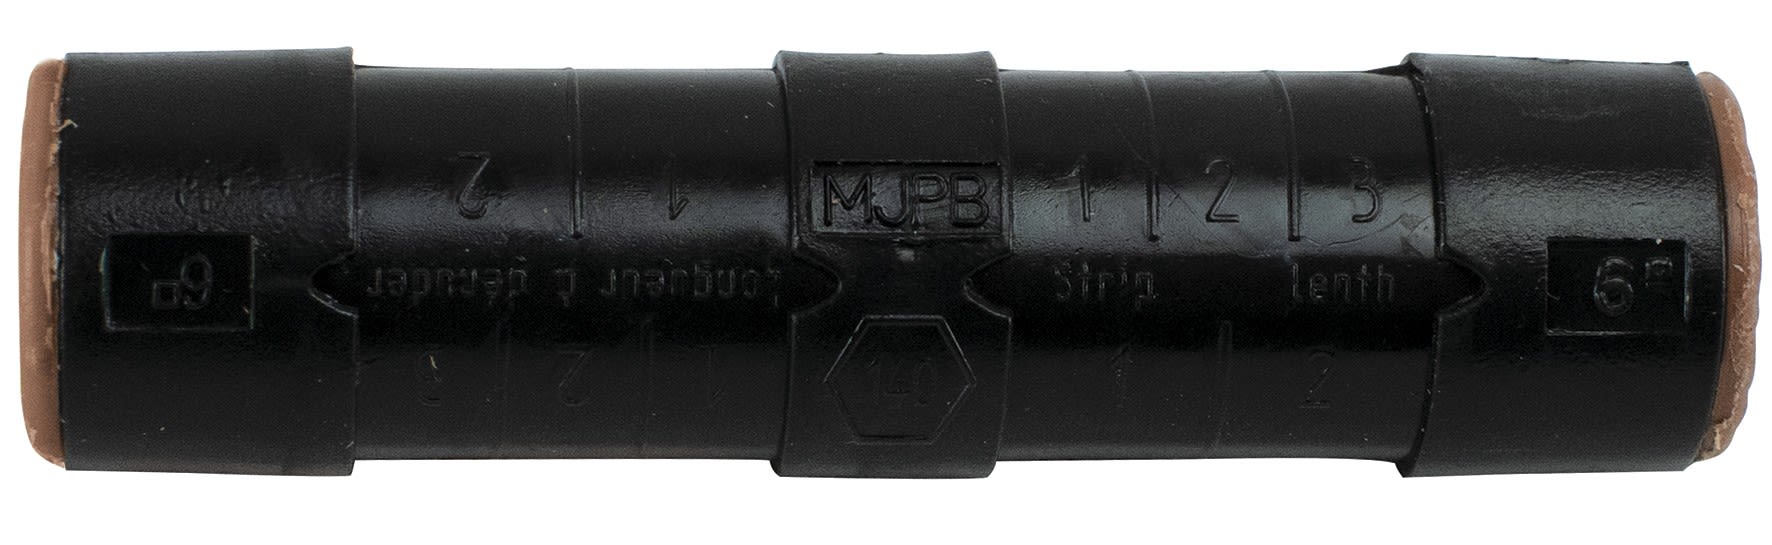 Michaud - Manchon de branchement préisolé MJPB 6 mm²